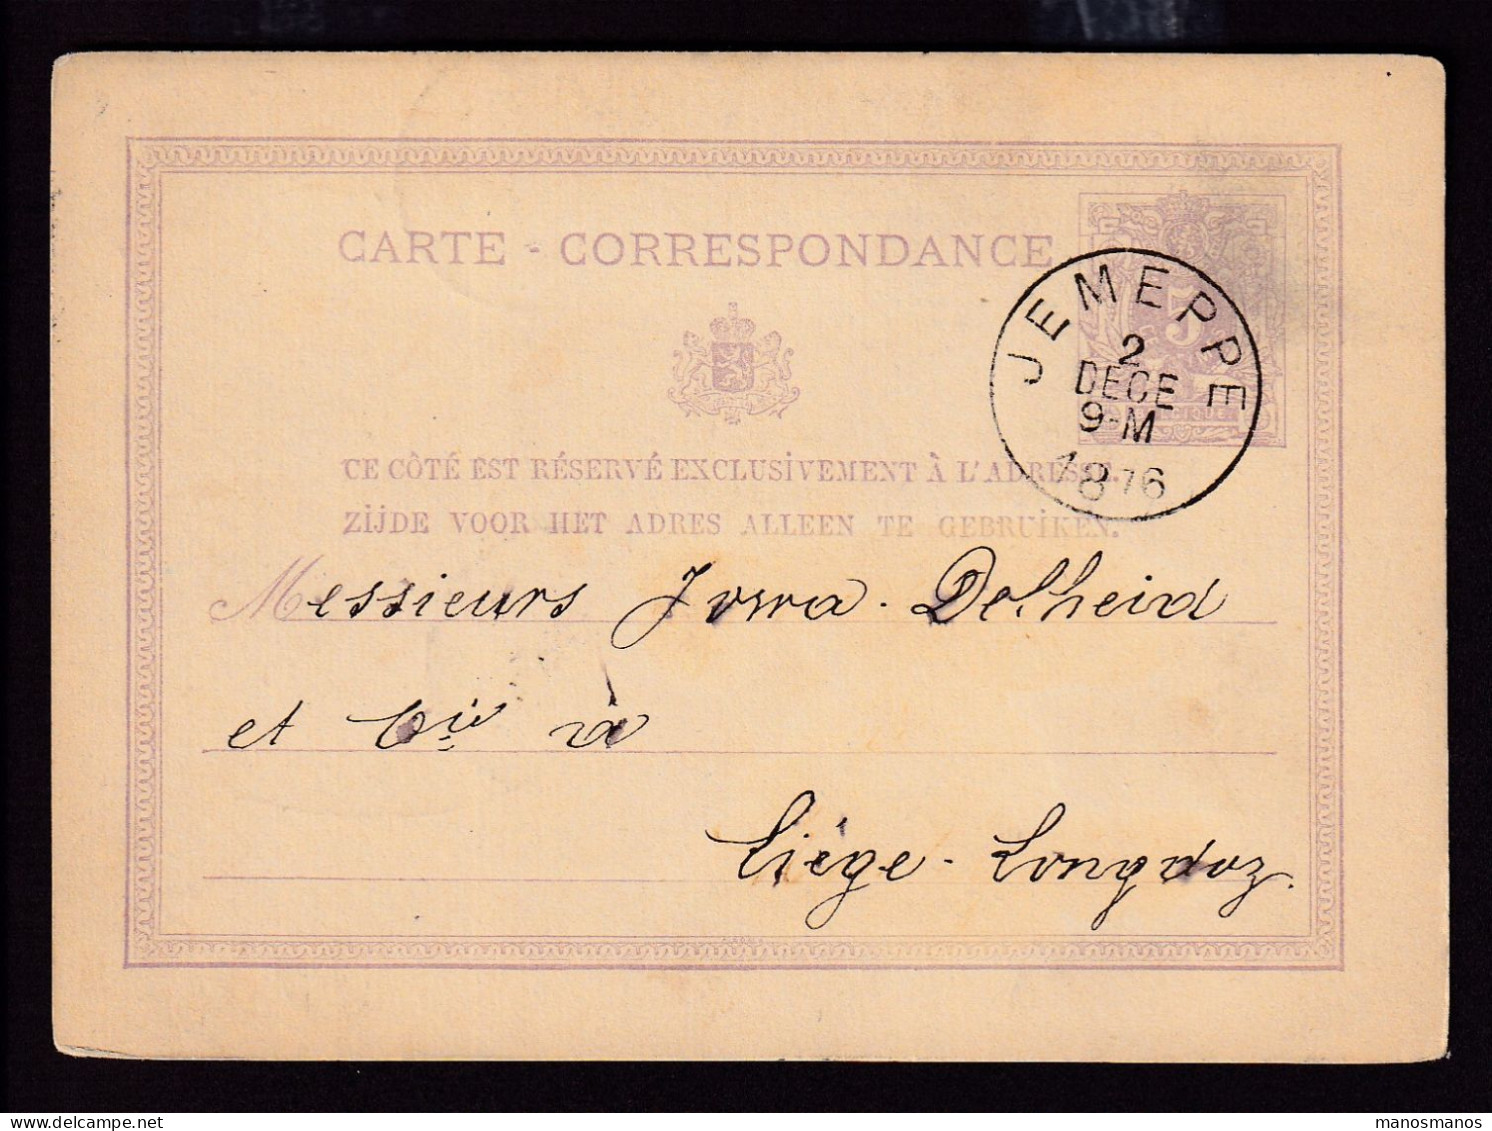 DDFF 531 - Entier Lion Couché JEMEPPE 1876 - Cachet Braconnier Frères Et Soeur à TILLEUR - Postcards 1871-1909